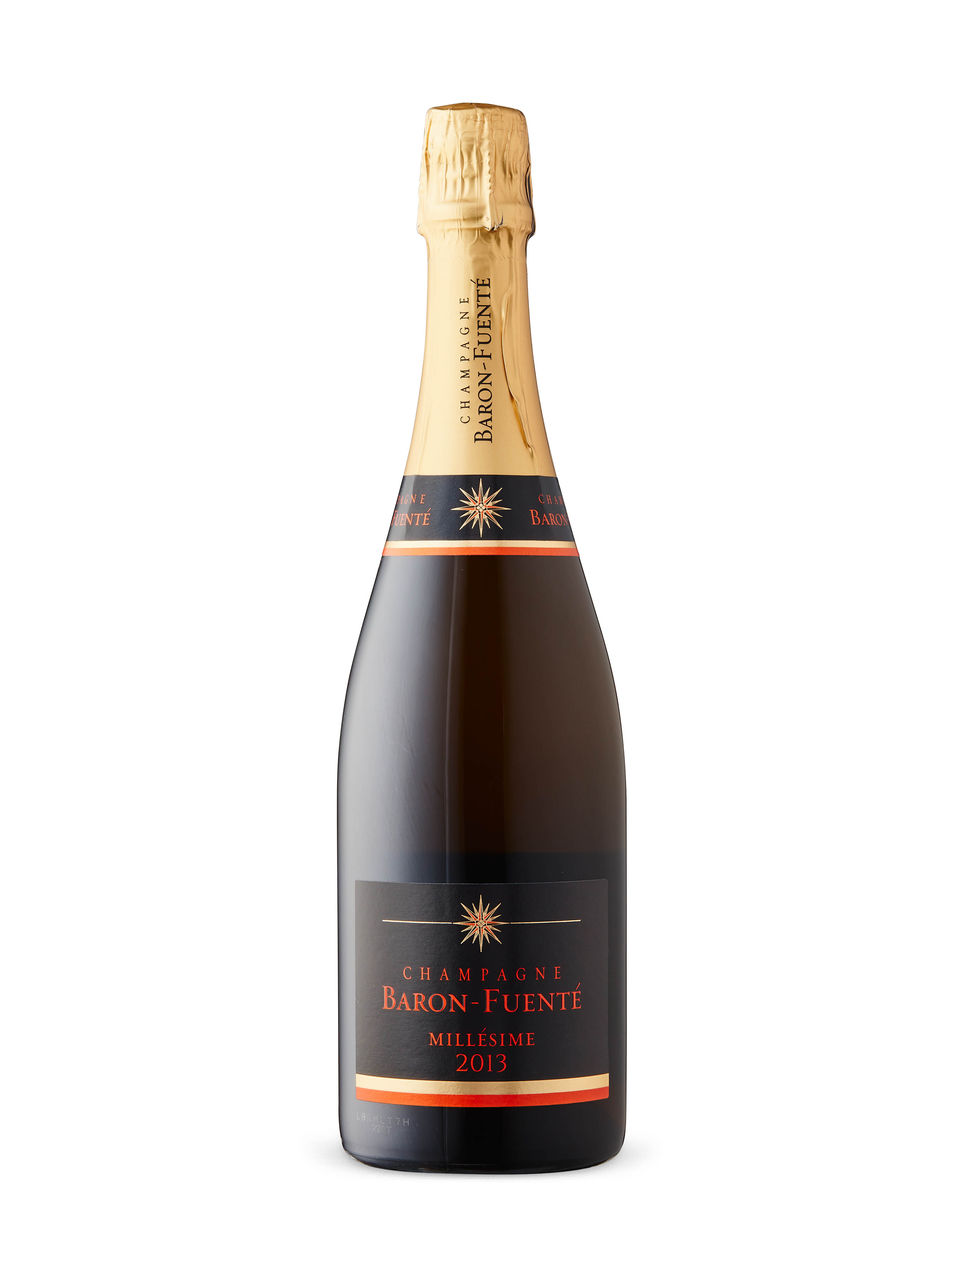 Baron-Fuenté Grand Millésime Brut Champagne | LCBO